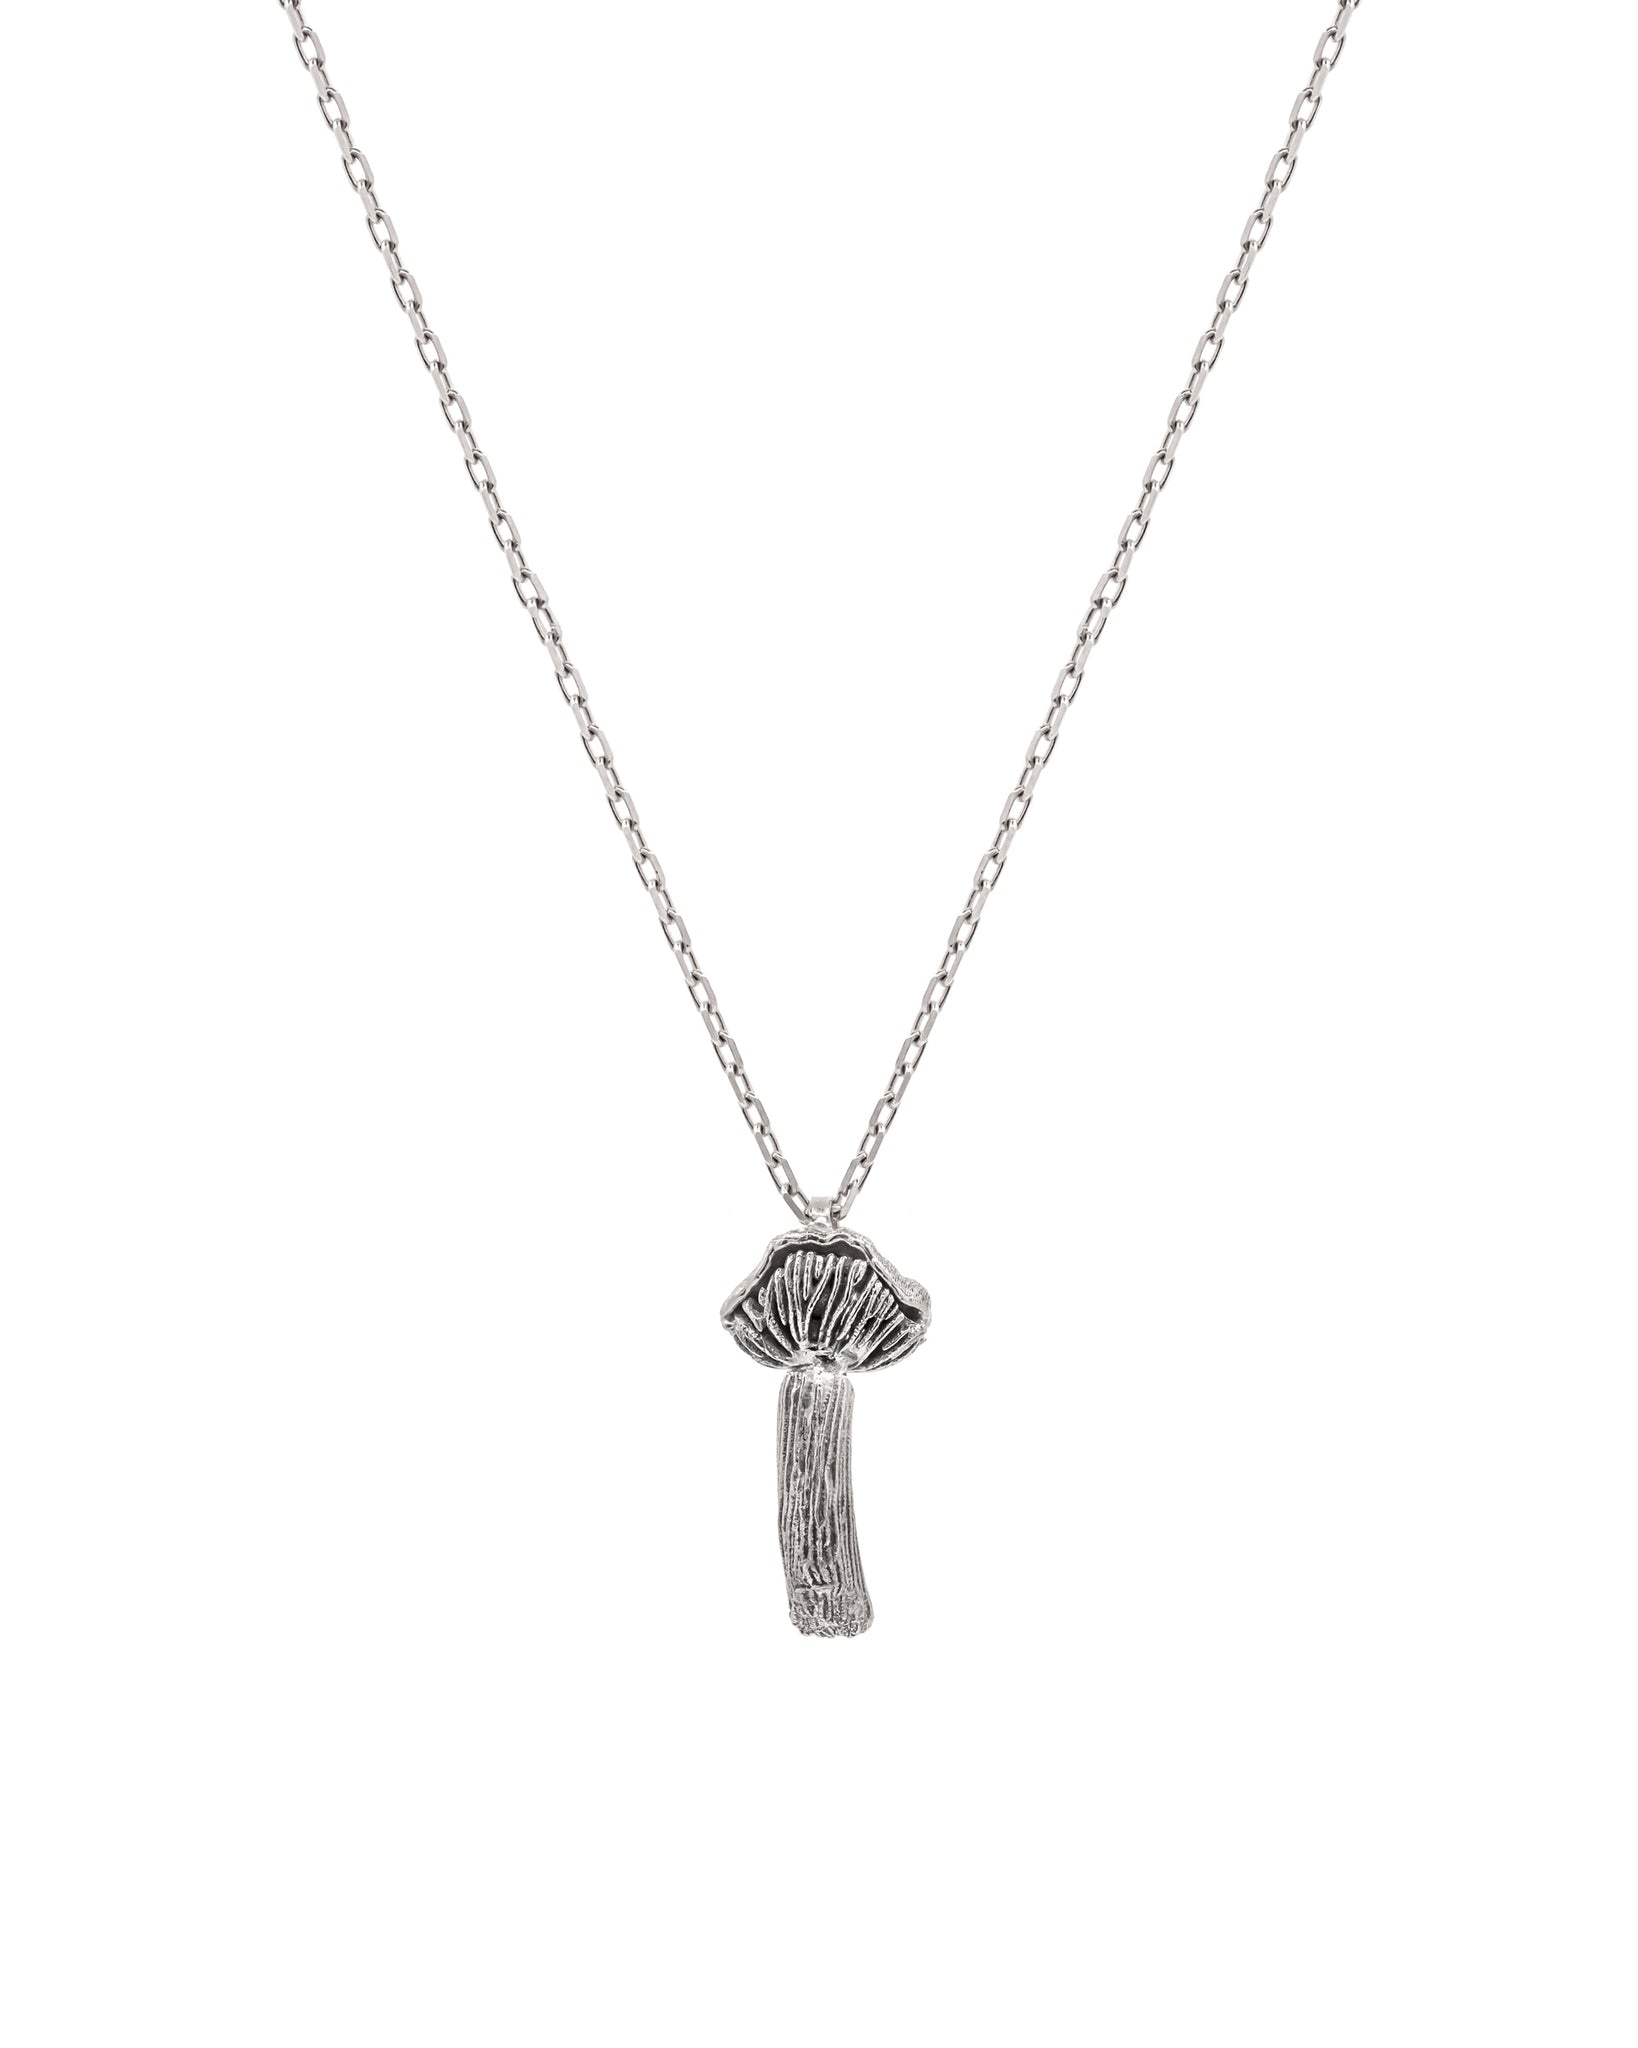 FUNGI Laccaria Single Charm Silver Necklace